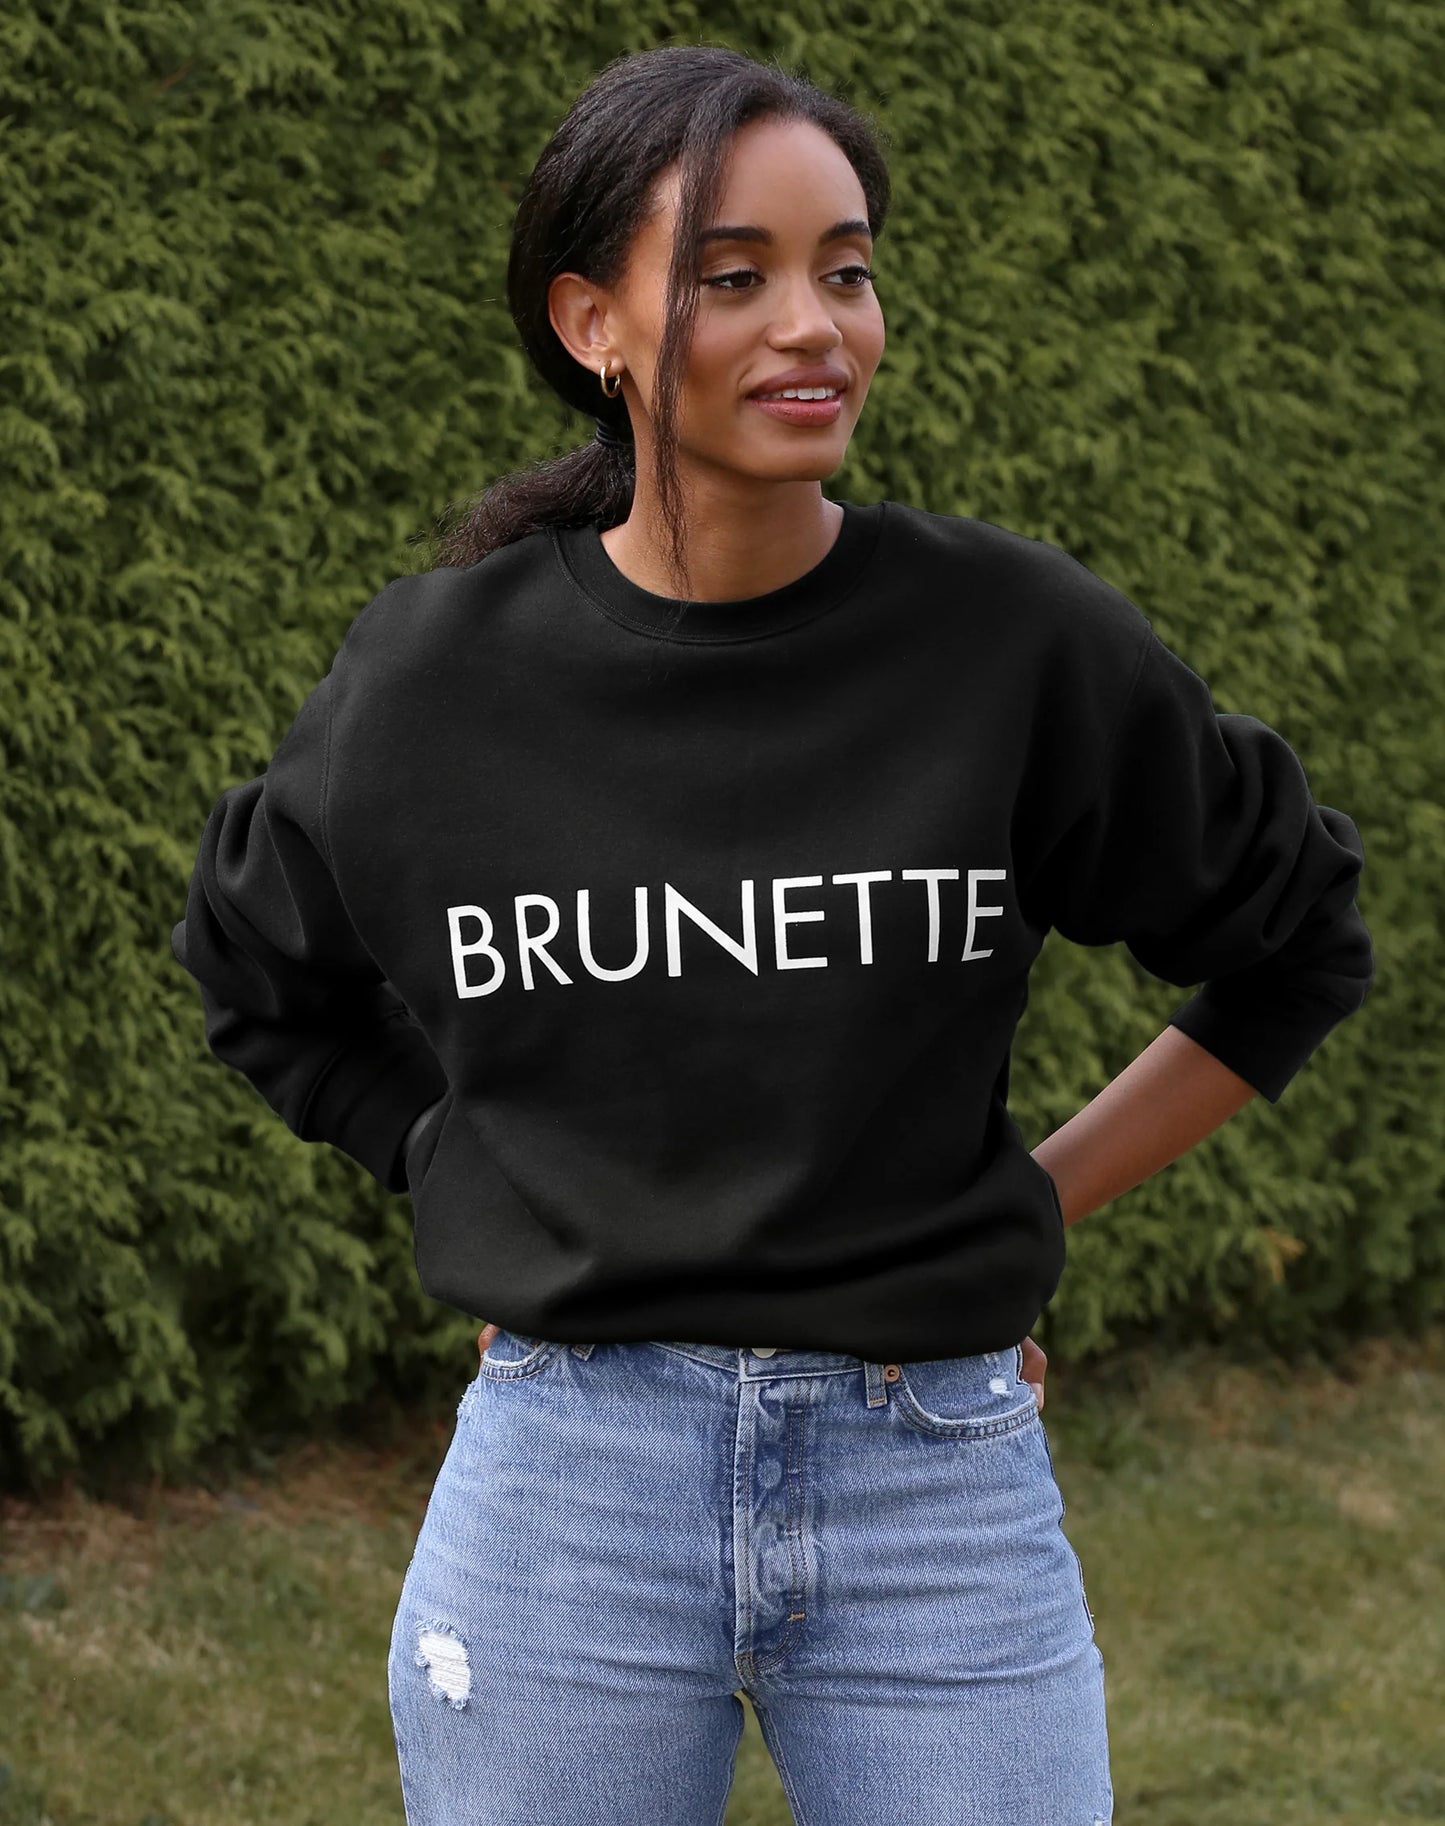 The "BRUNETTE" Classic Crew Neck Sweatshirt